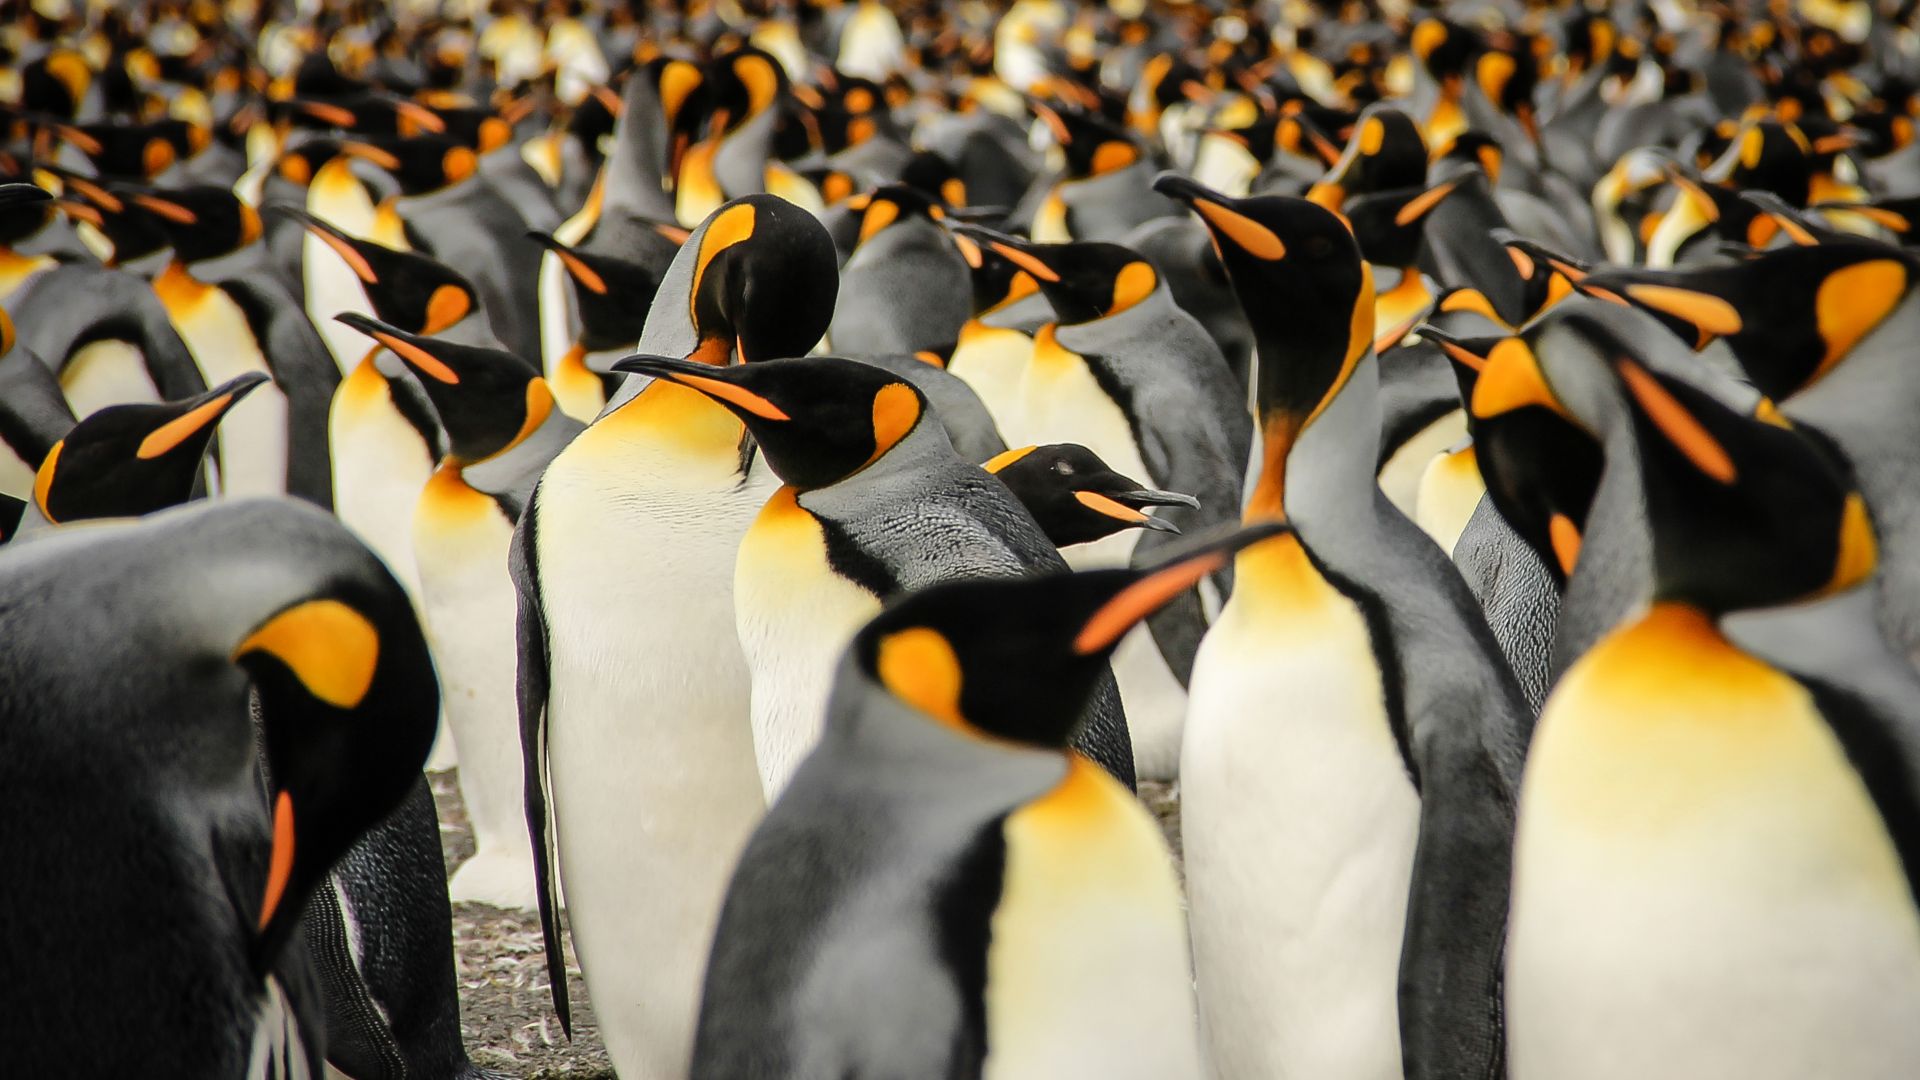 Королевские пингвины, Южная Грузия, птицы, 2015 Sony World Photography Awards, King penguins, South Georgia, birds, 2015 Sony World Photography Awards (horizontal)